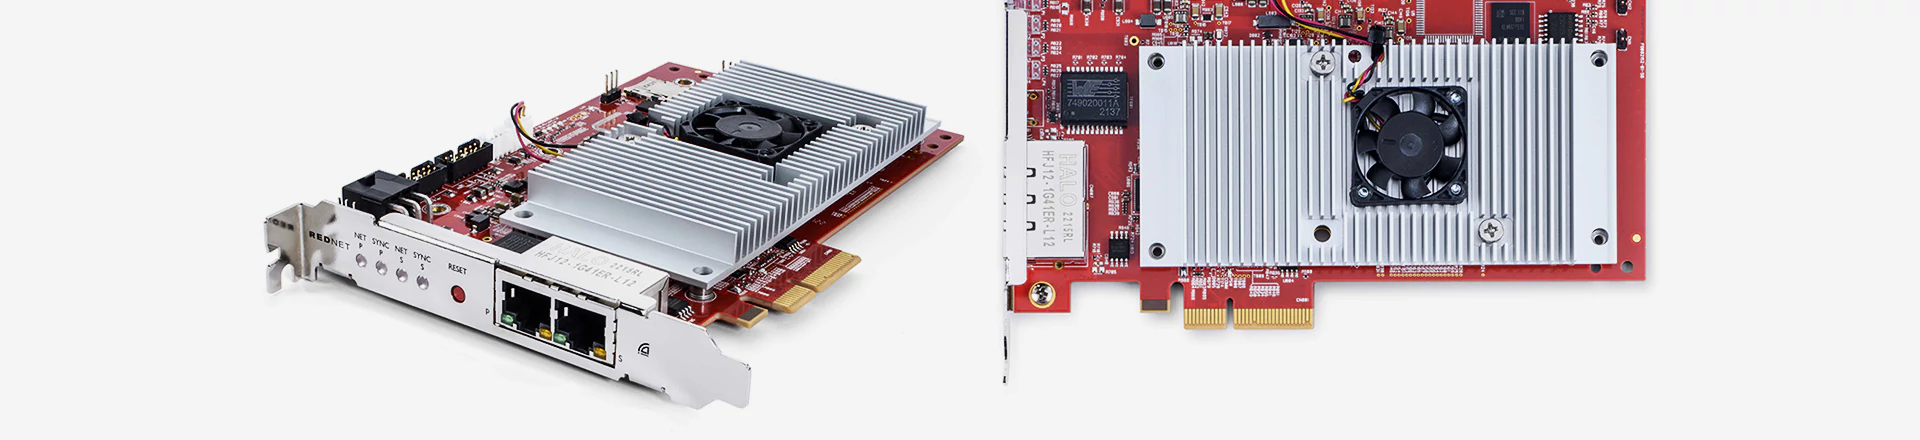 RedNet PCIeNX - Mała latencja i 128 kanałów 192kHz/24bit od Focusrite